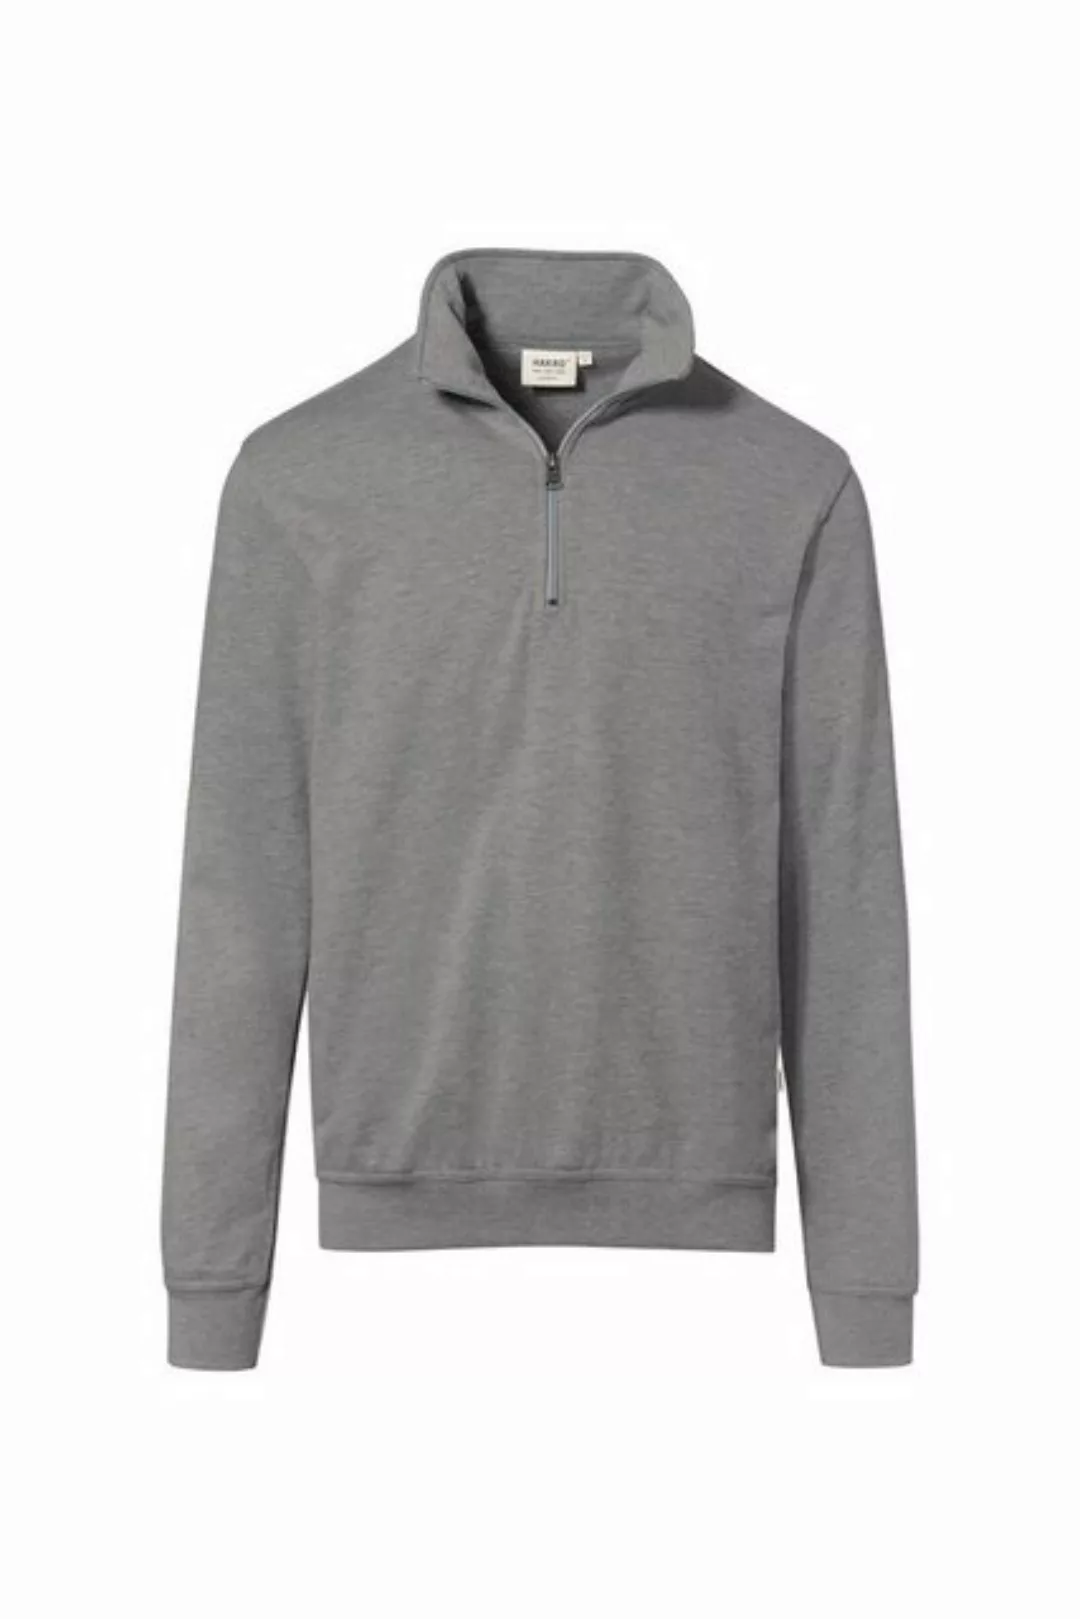 Hakro Sweatshirt Zip-Sweatshirt Premium * günstig online kaufen